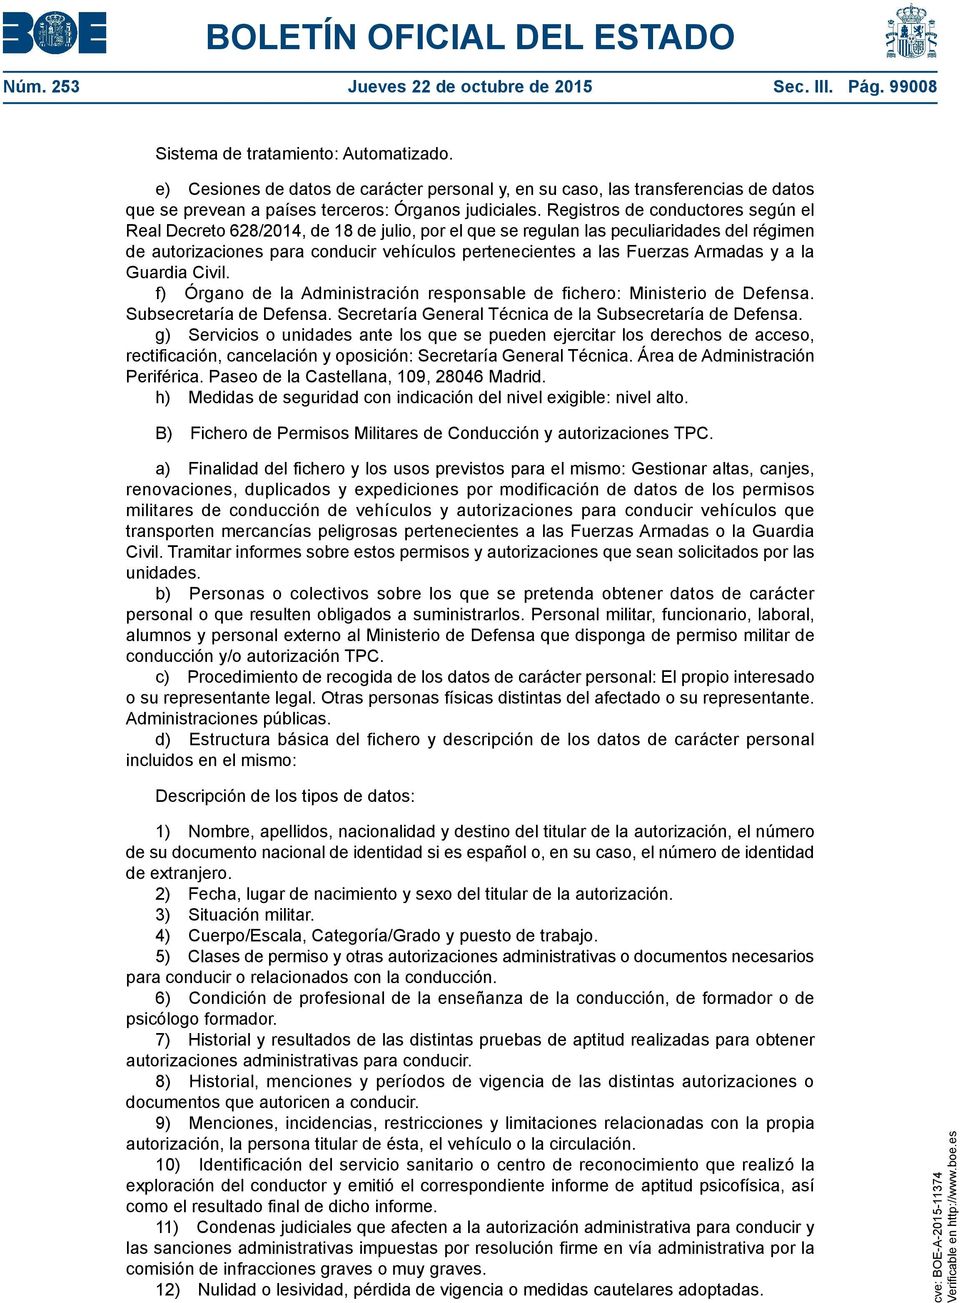 Registros de conductores según el Real Decreto 628/2014, de 18 de julio, por el que se regulan las peculiaridades del régimen de autorizaciones para conducir vehículos pertenecientes a las Fuerzas